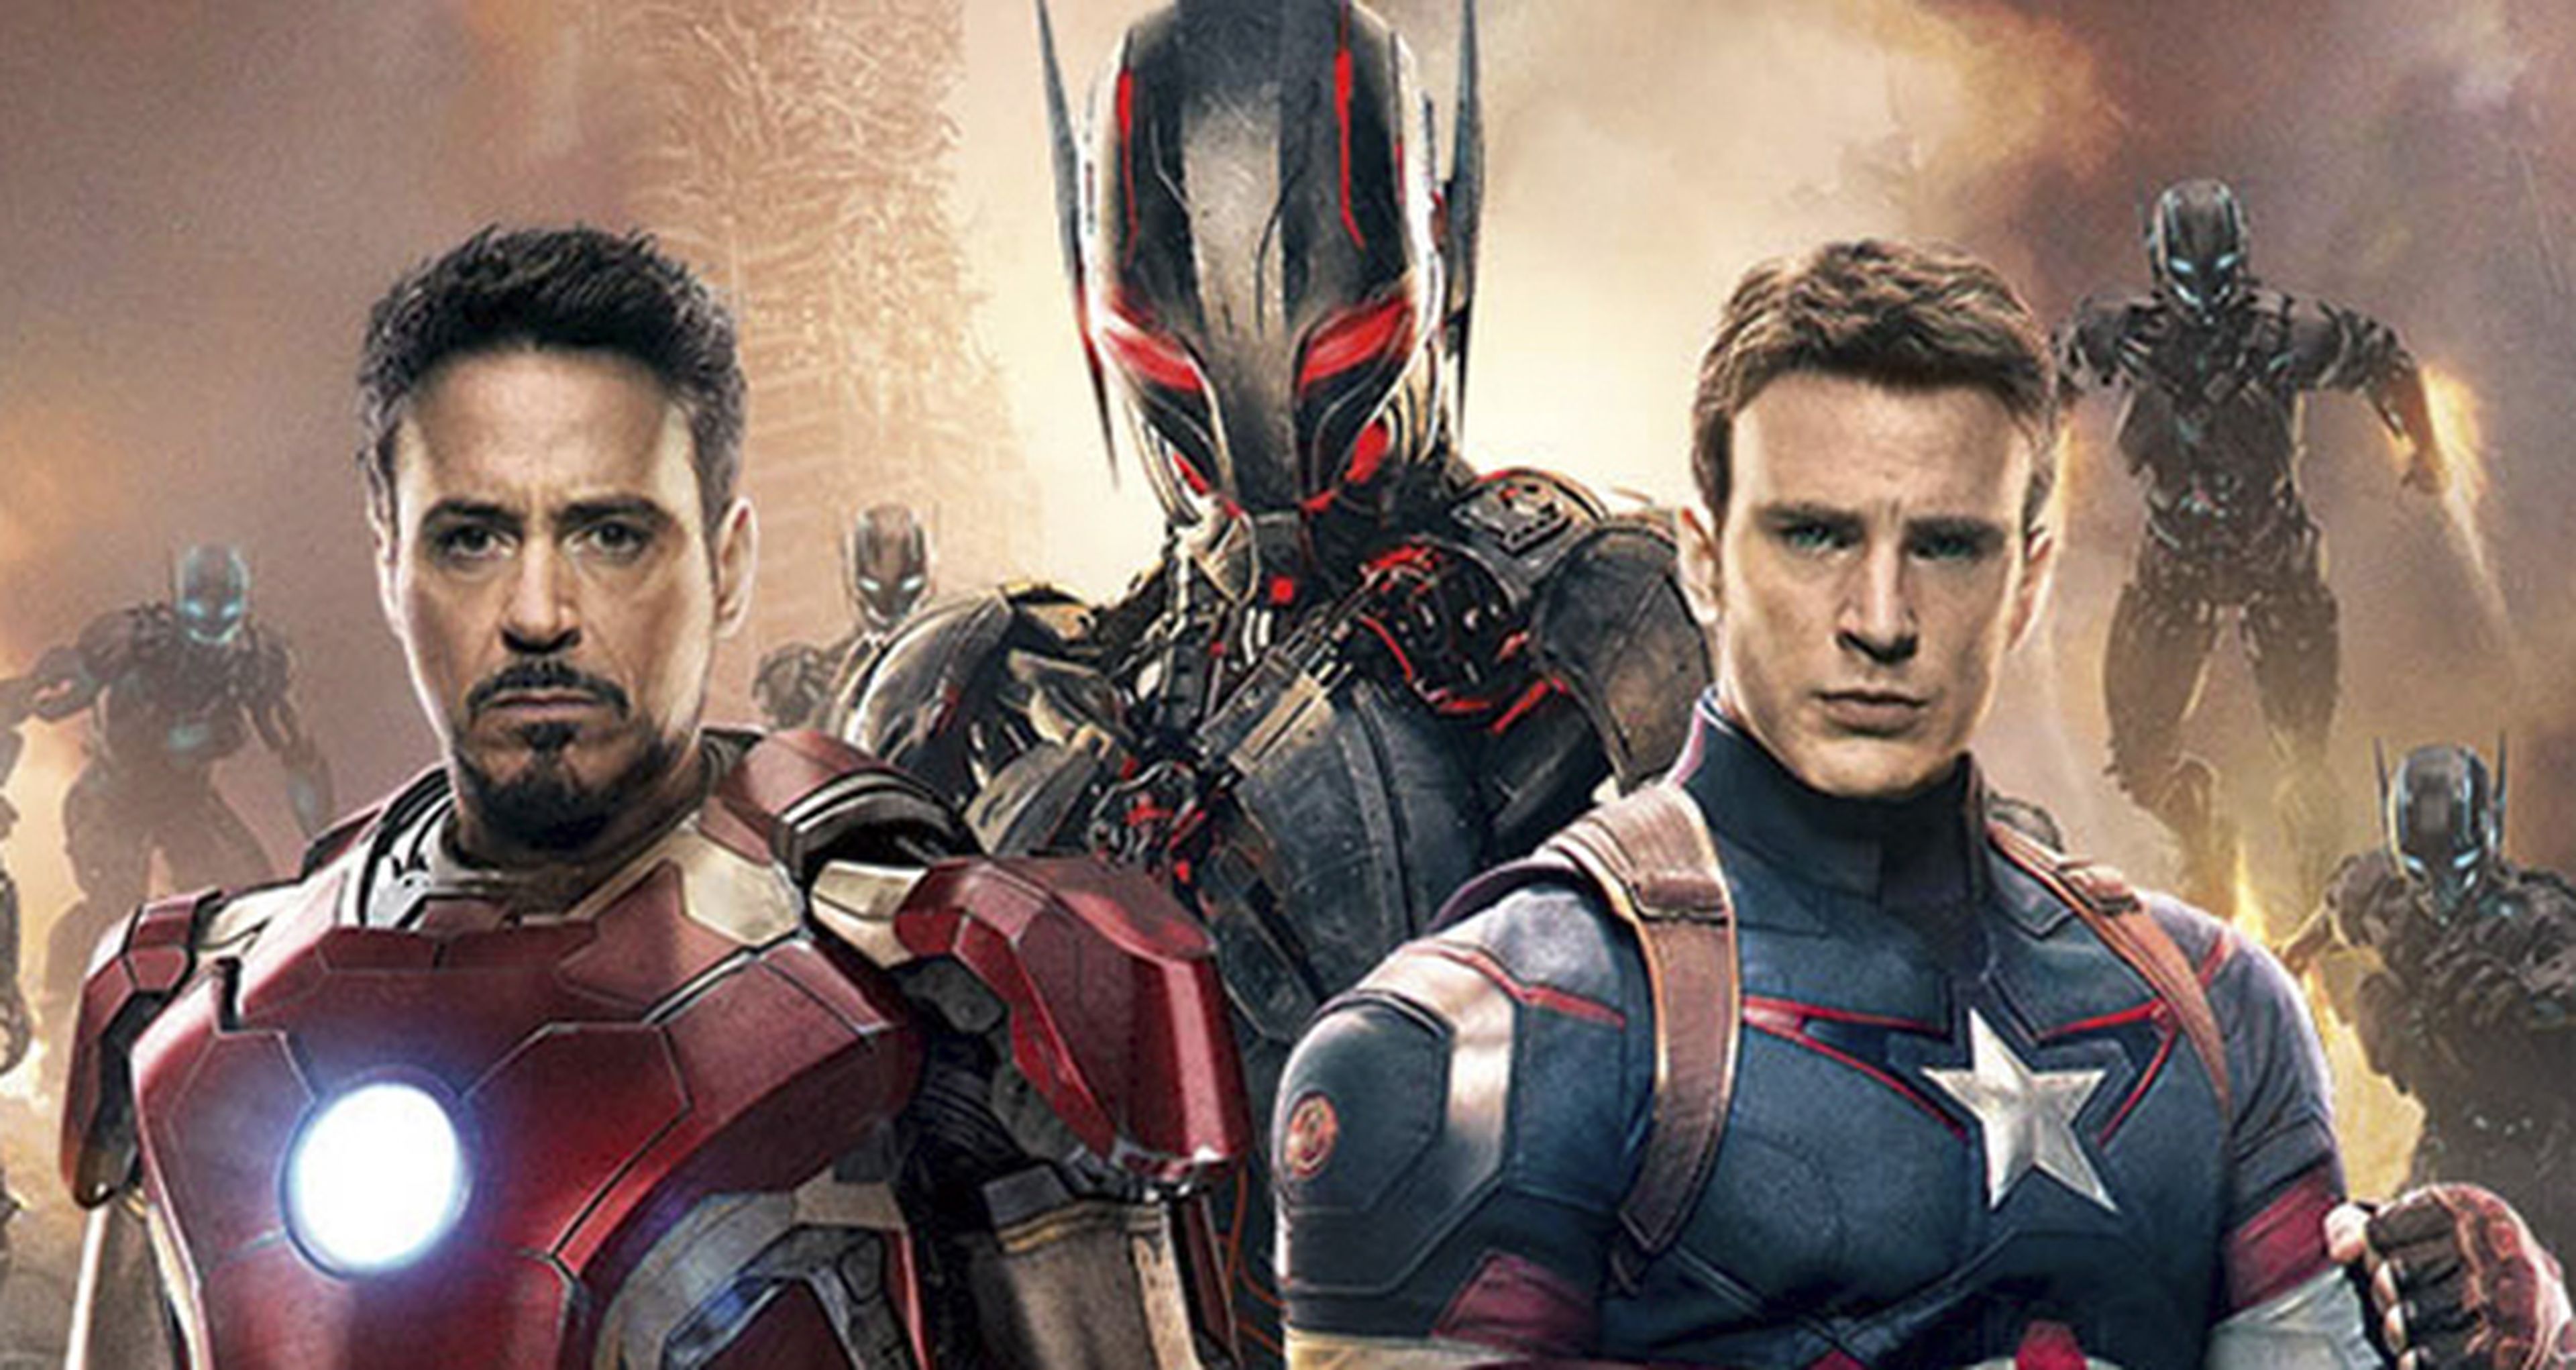 Los Vengadores: la era de Ultrón, superará en FX a todas las pelis de Marvel